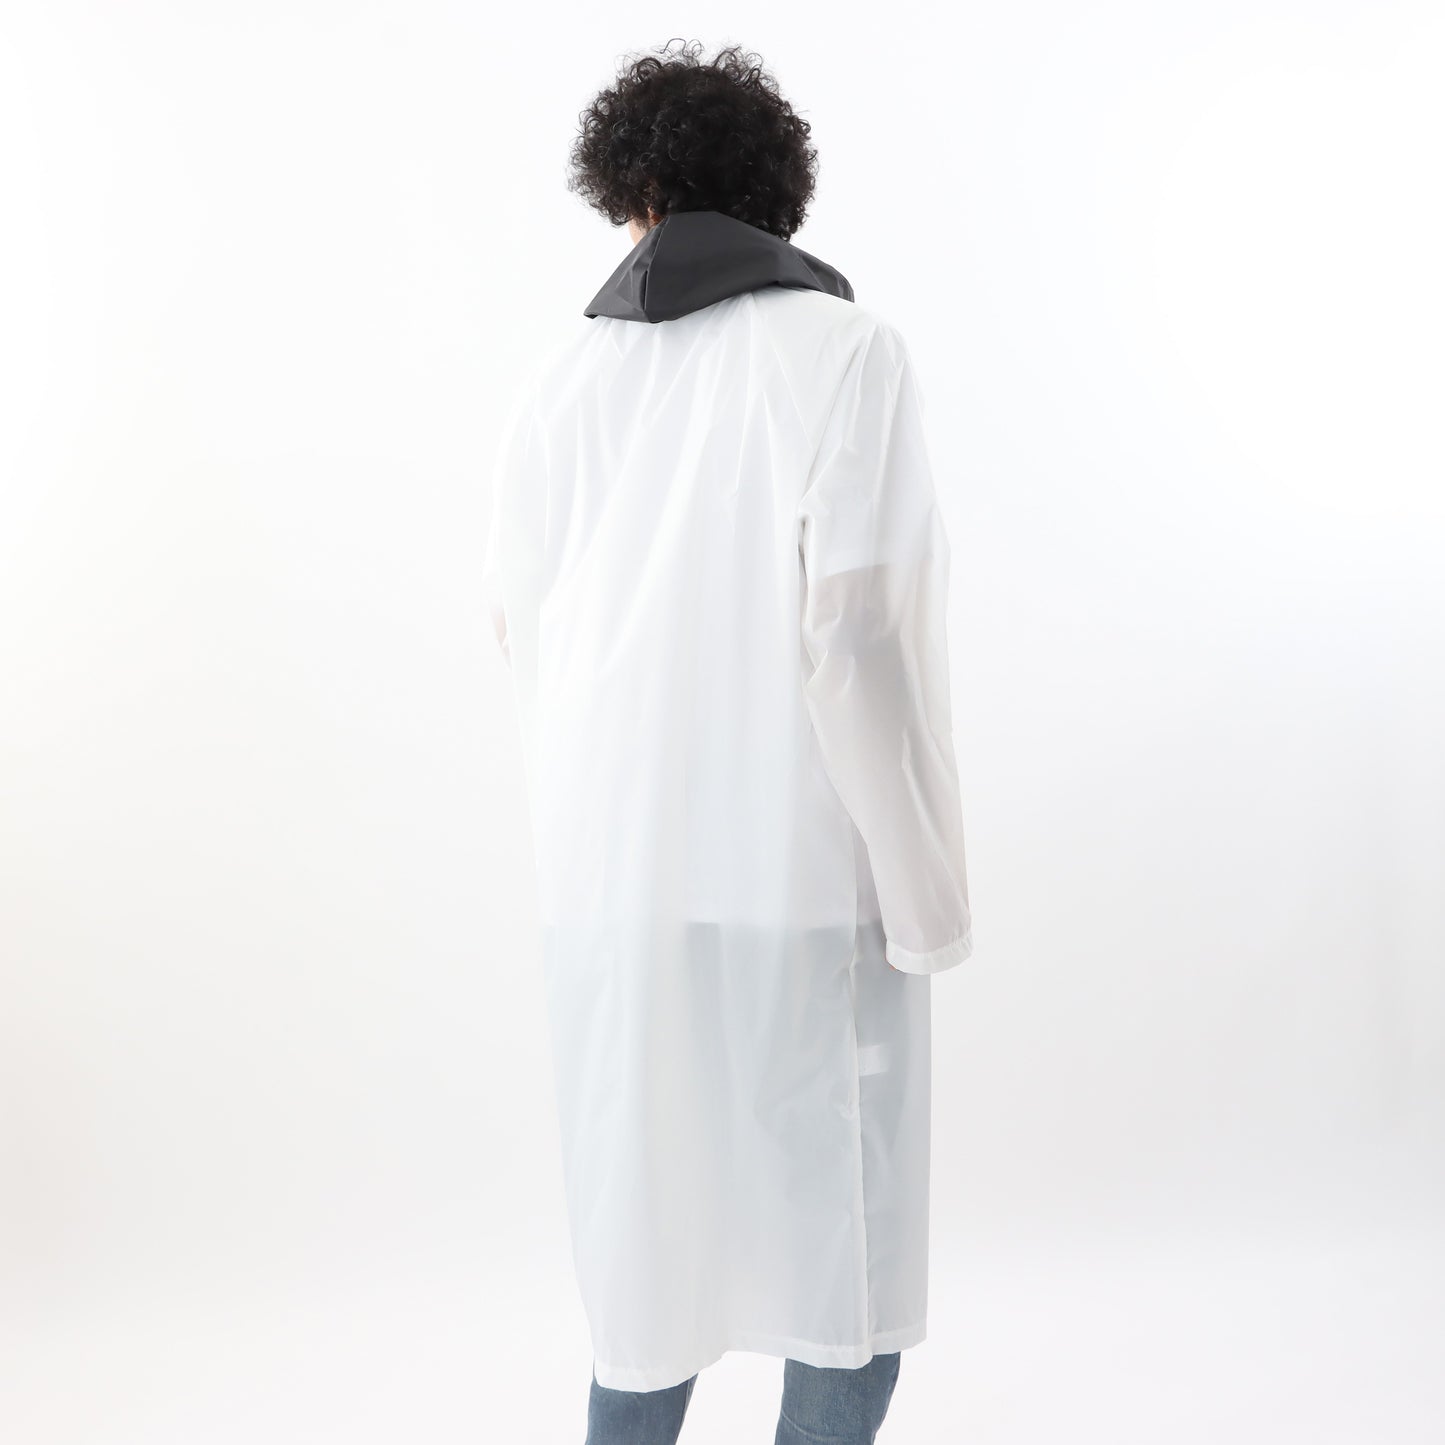 MOLUYUKA Raincoat for owners